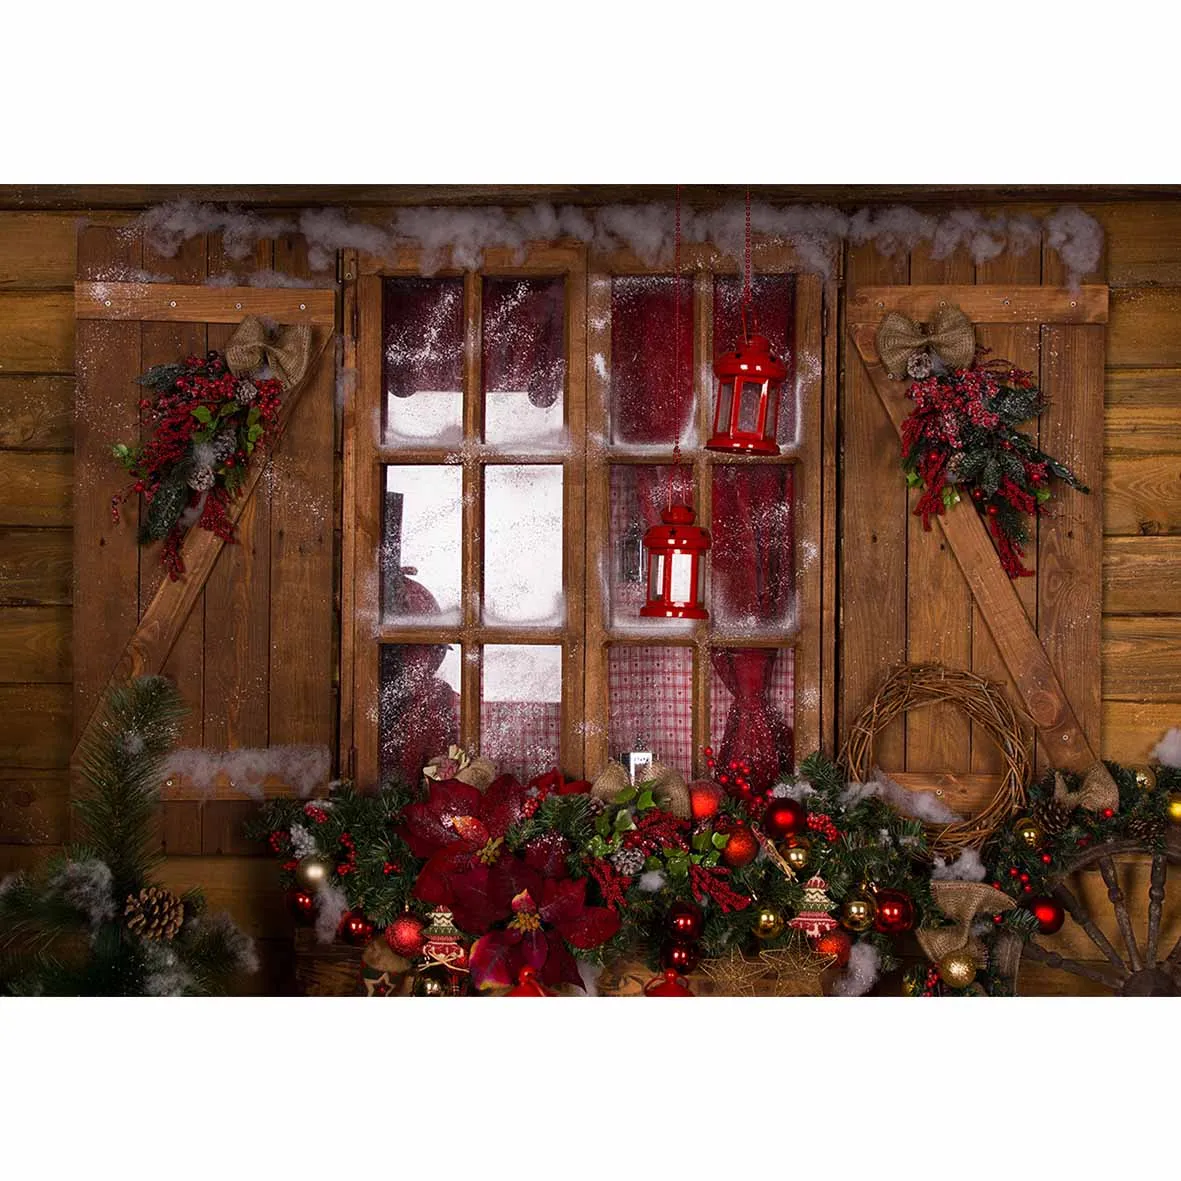 Фотофон allenjoy фон для фотосъемки Рождественский деревянный подарочный фон с изображением окна напечатанный фон для профессиональной портретной съемки